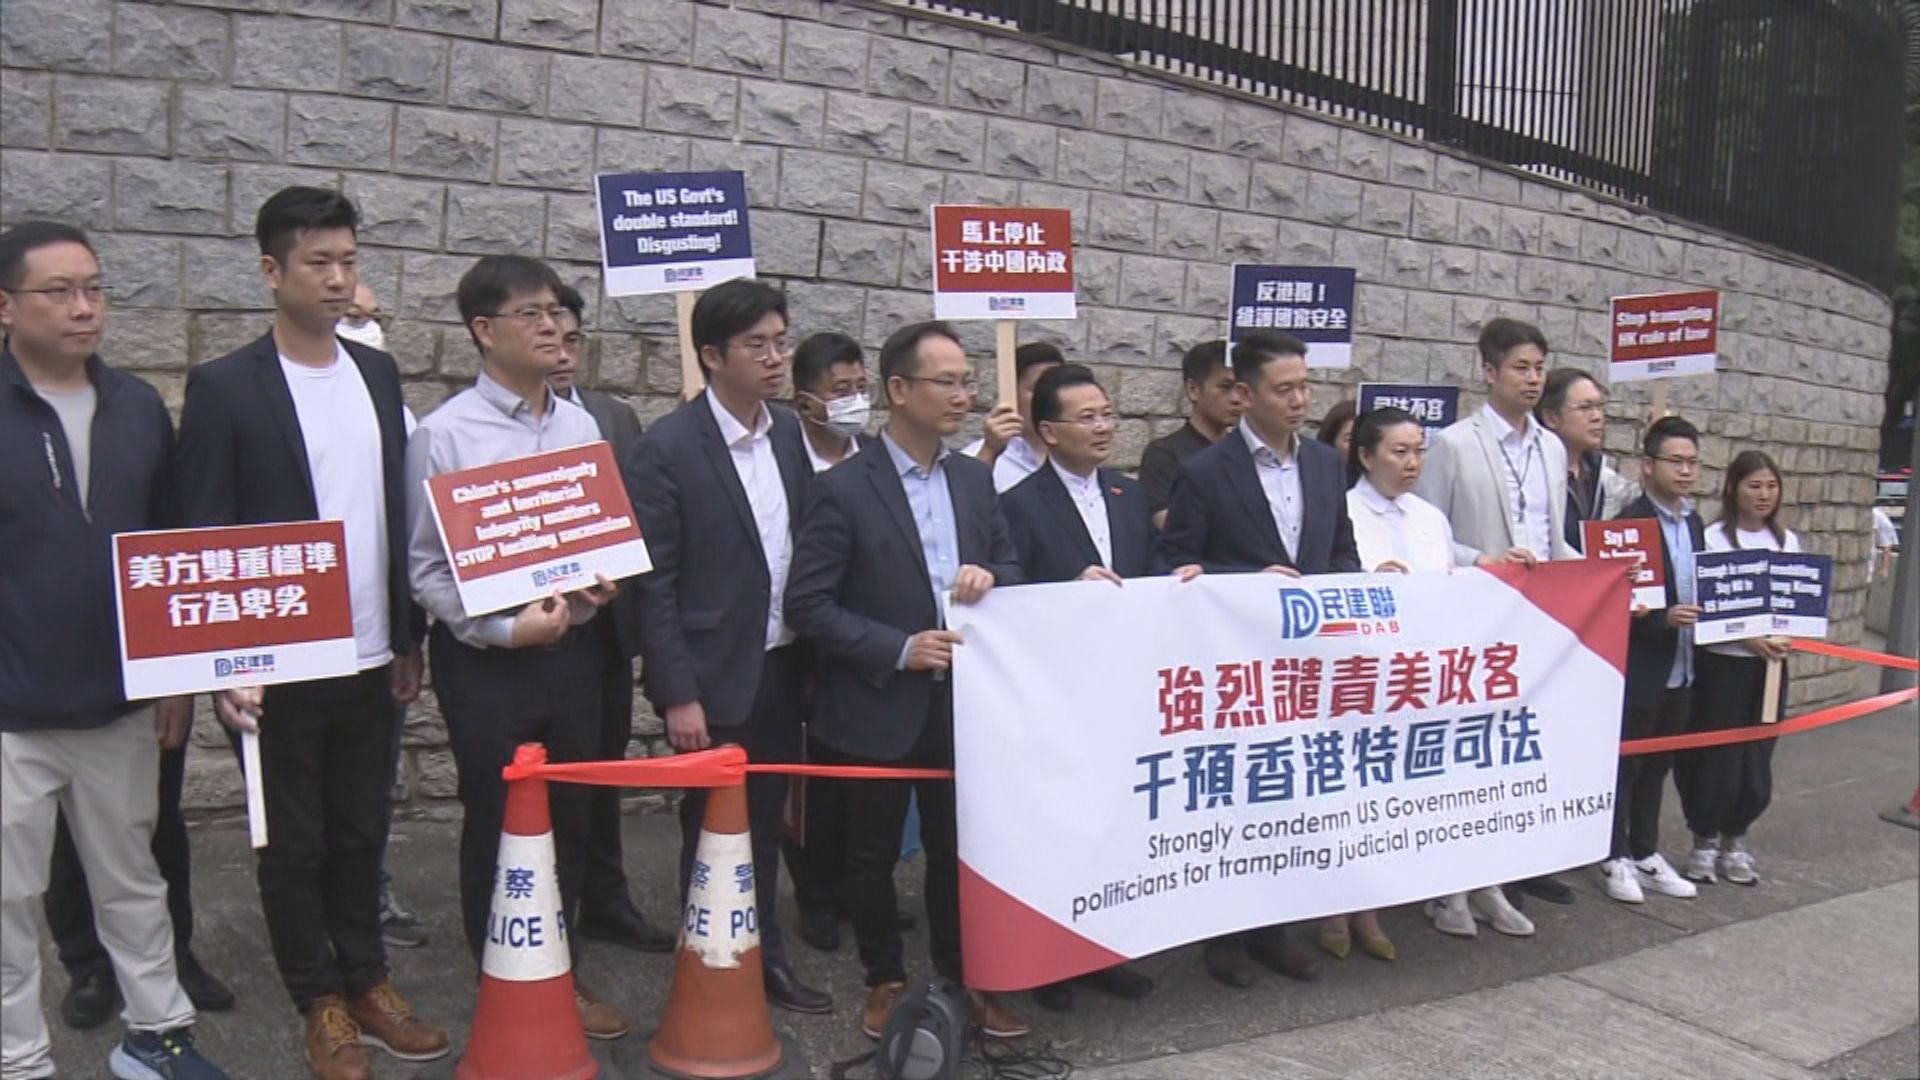 外交部駐港公署批評梅儒瑞 民建聯抗議美國干預本港司法